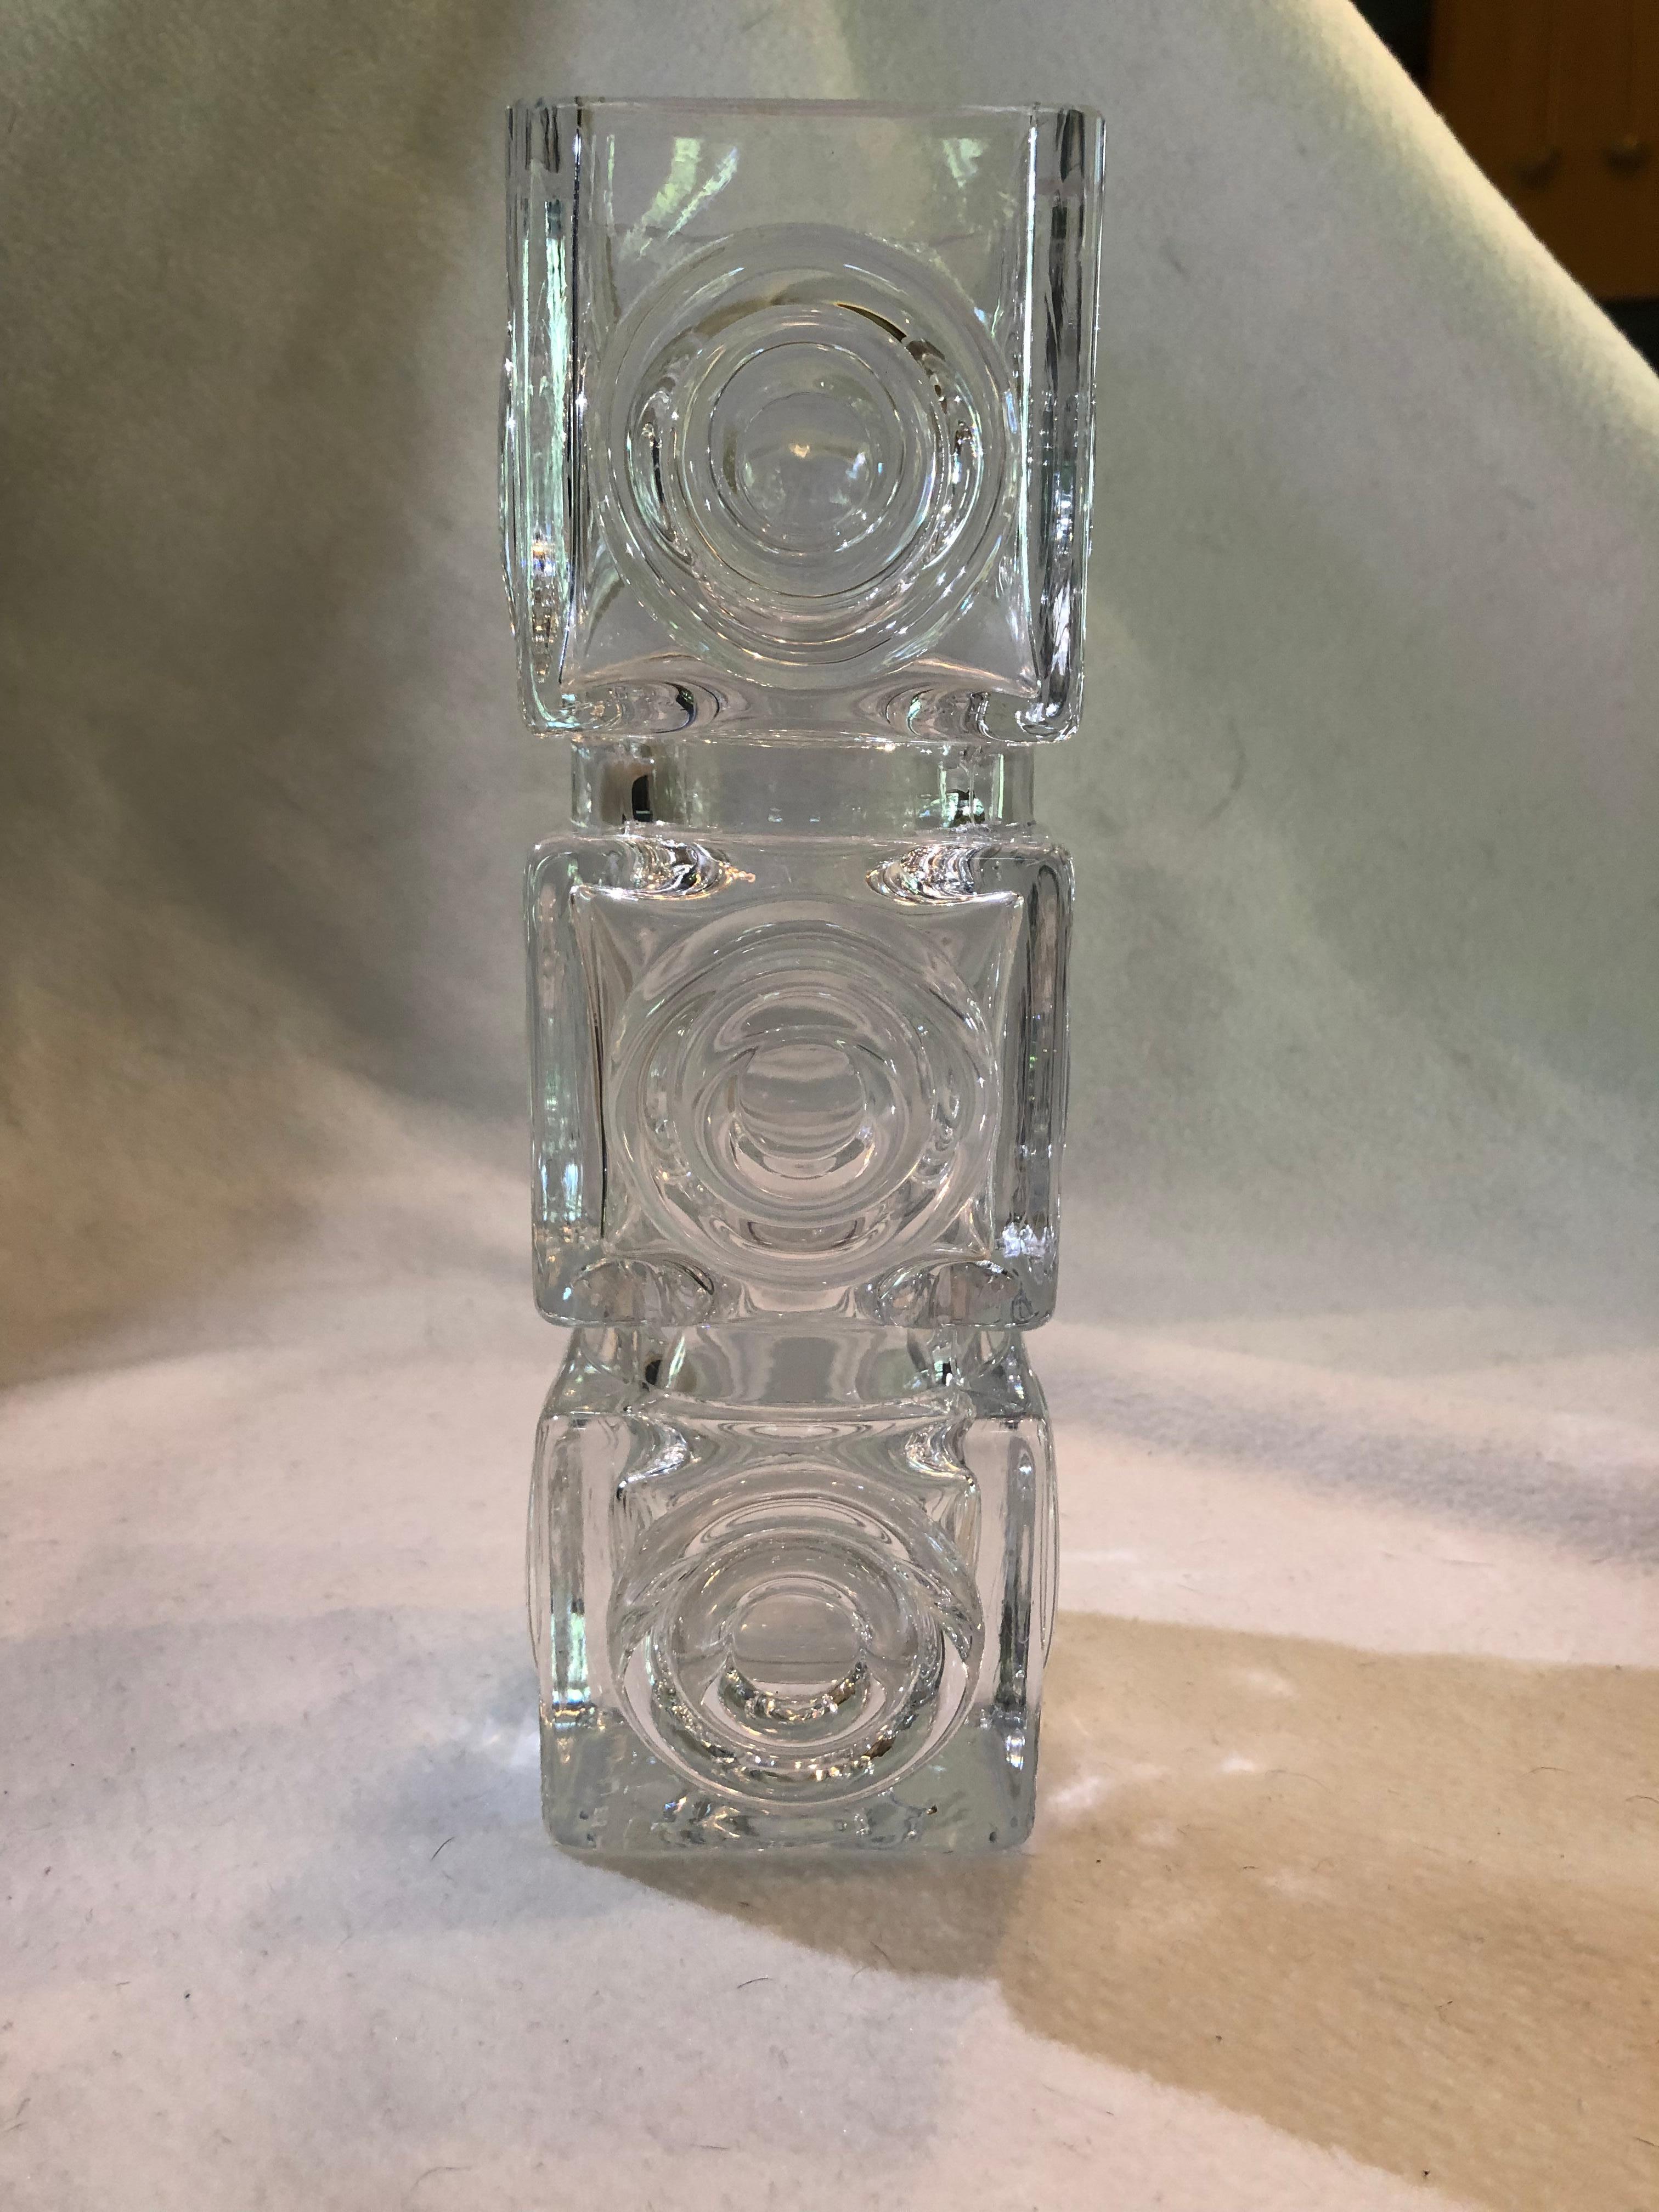 Eine schöne und seltene stilvolle Vintage-Vase aus schwedischem Kunstglas, entworfen von Bengt Edenfalk für Skruf Glasbruk. Die hohe, quadratische Vase aus Kristallglas hat ein kreisförmiges Medaillon-Design um die vier Seiten. Der Sockel trägt die